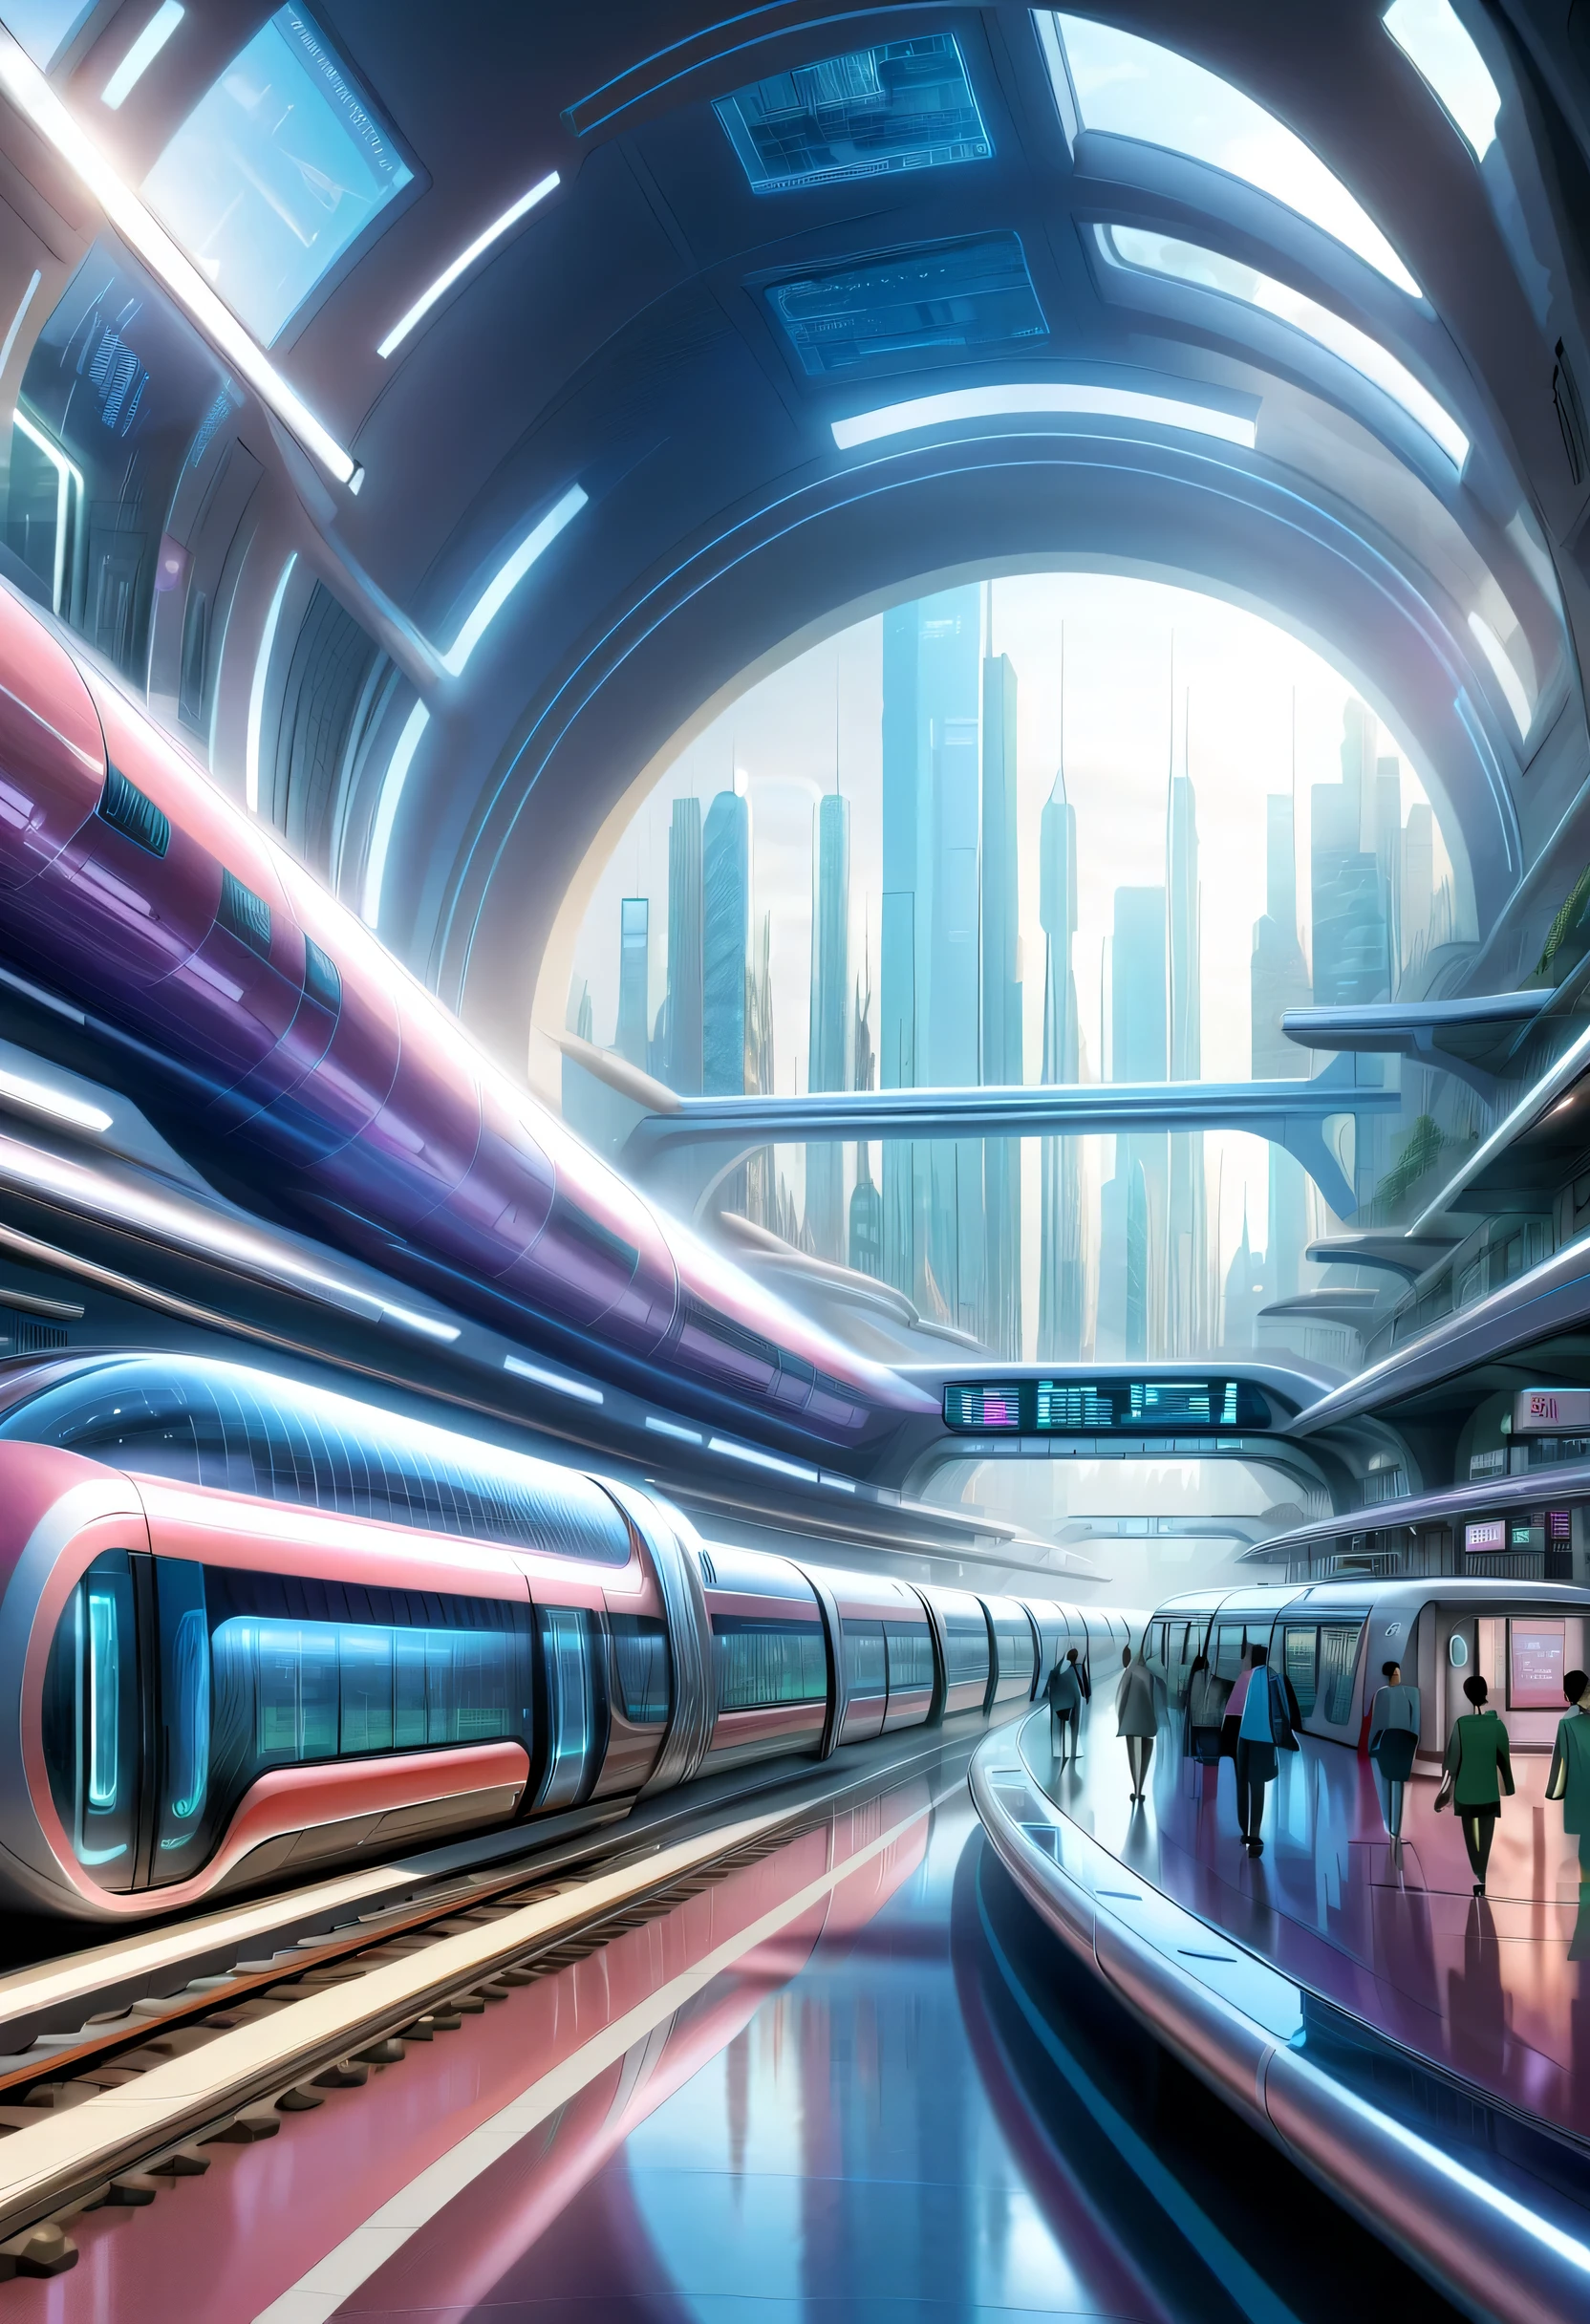 未来の首都に駅を描く,透明チューブ:複数:中には電車が走っている,未来都市,ターミナル駅,複数の鉄道が接続する駅,未来,精通している